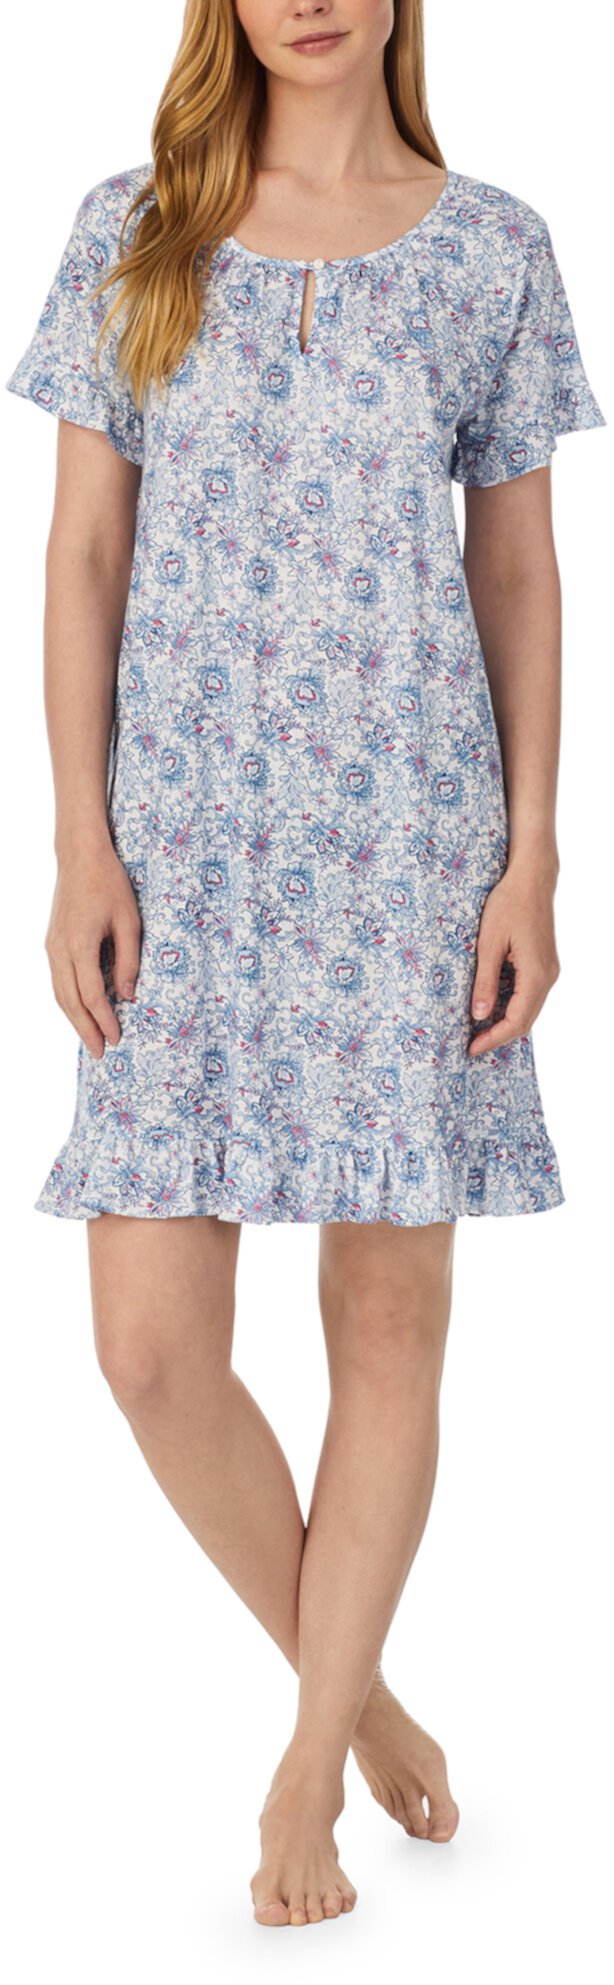 Короткое платье с рюшами на рукавах Ralph Lauren